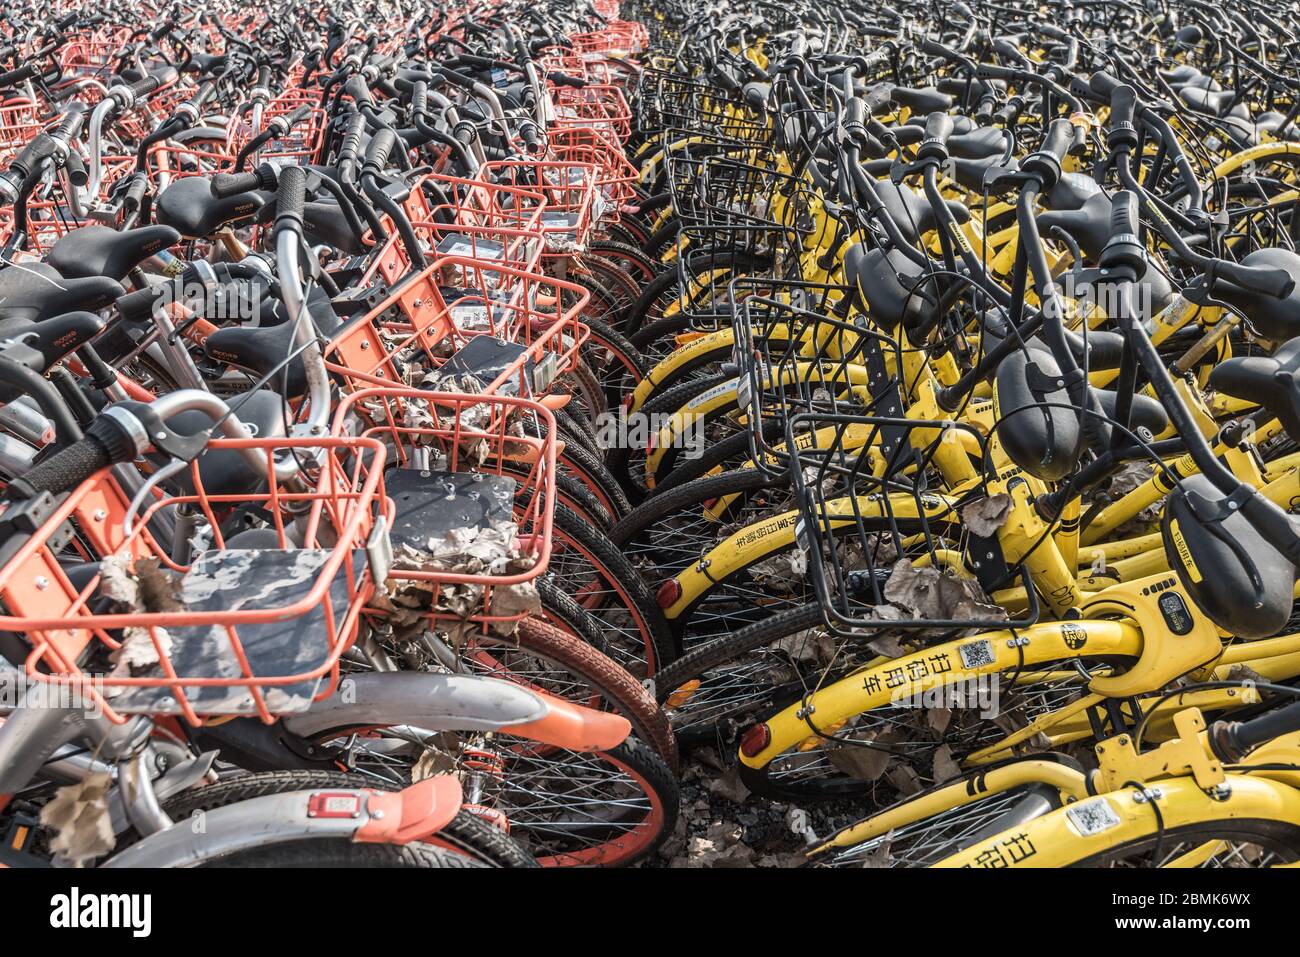 Shanghai, Chine - 26 février 2018 : la pléthore de vélos partagés s'emmêle sur un parking Banque D'Images